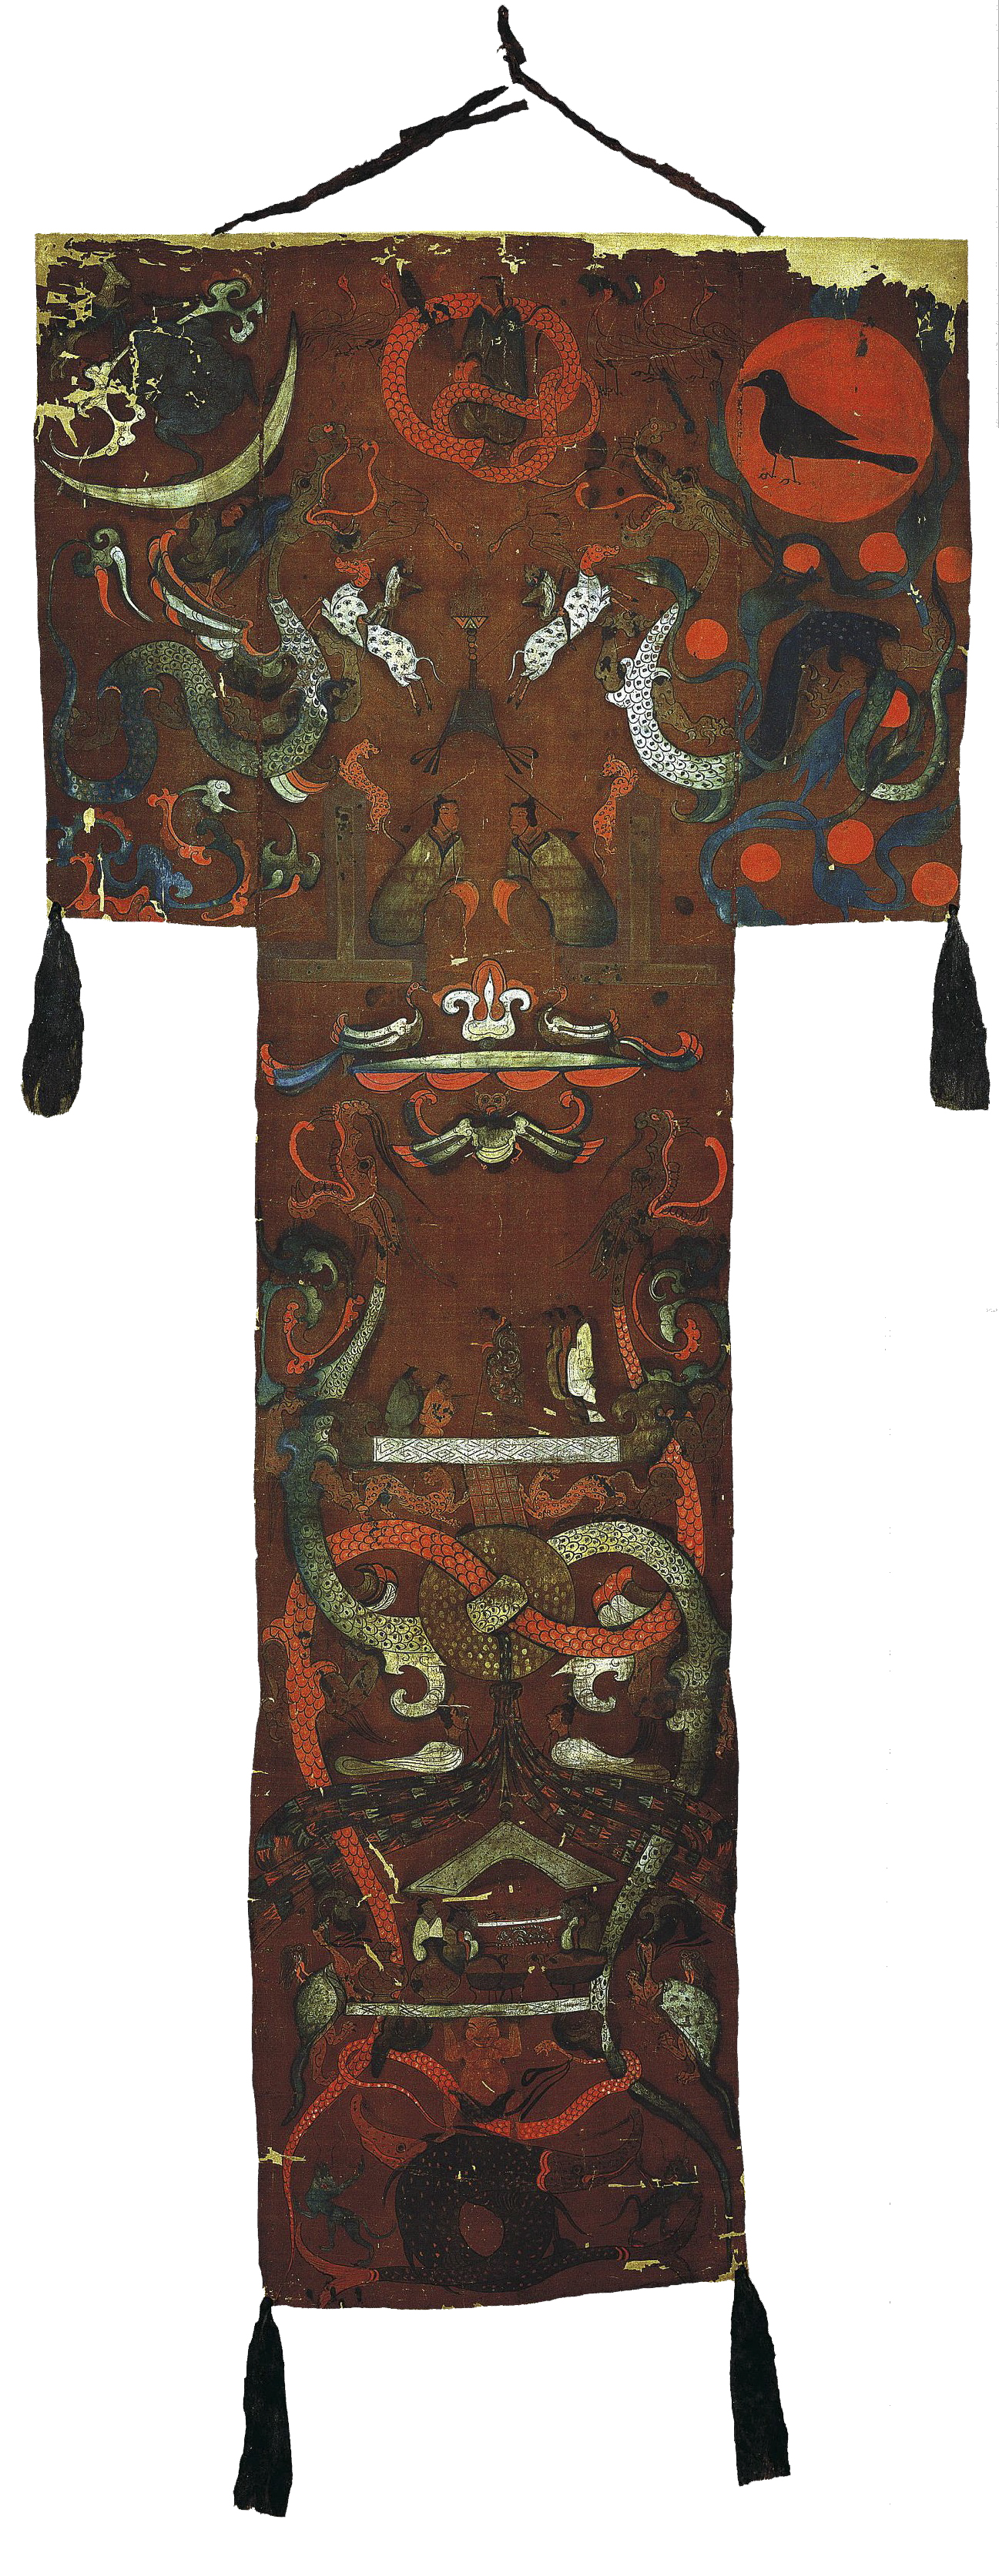 西汉t形帛画 1972年长沙马王堆一号汉墓出土 湖南省博物馆